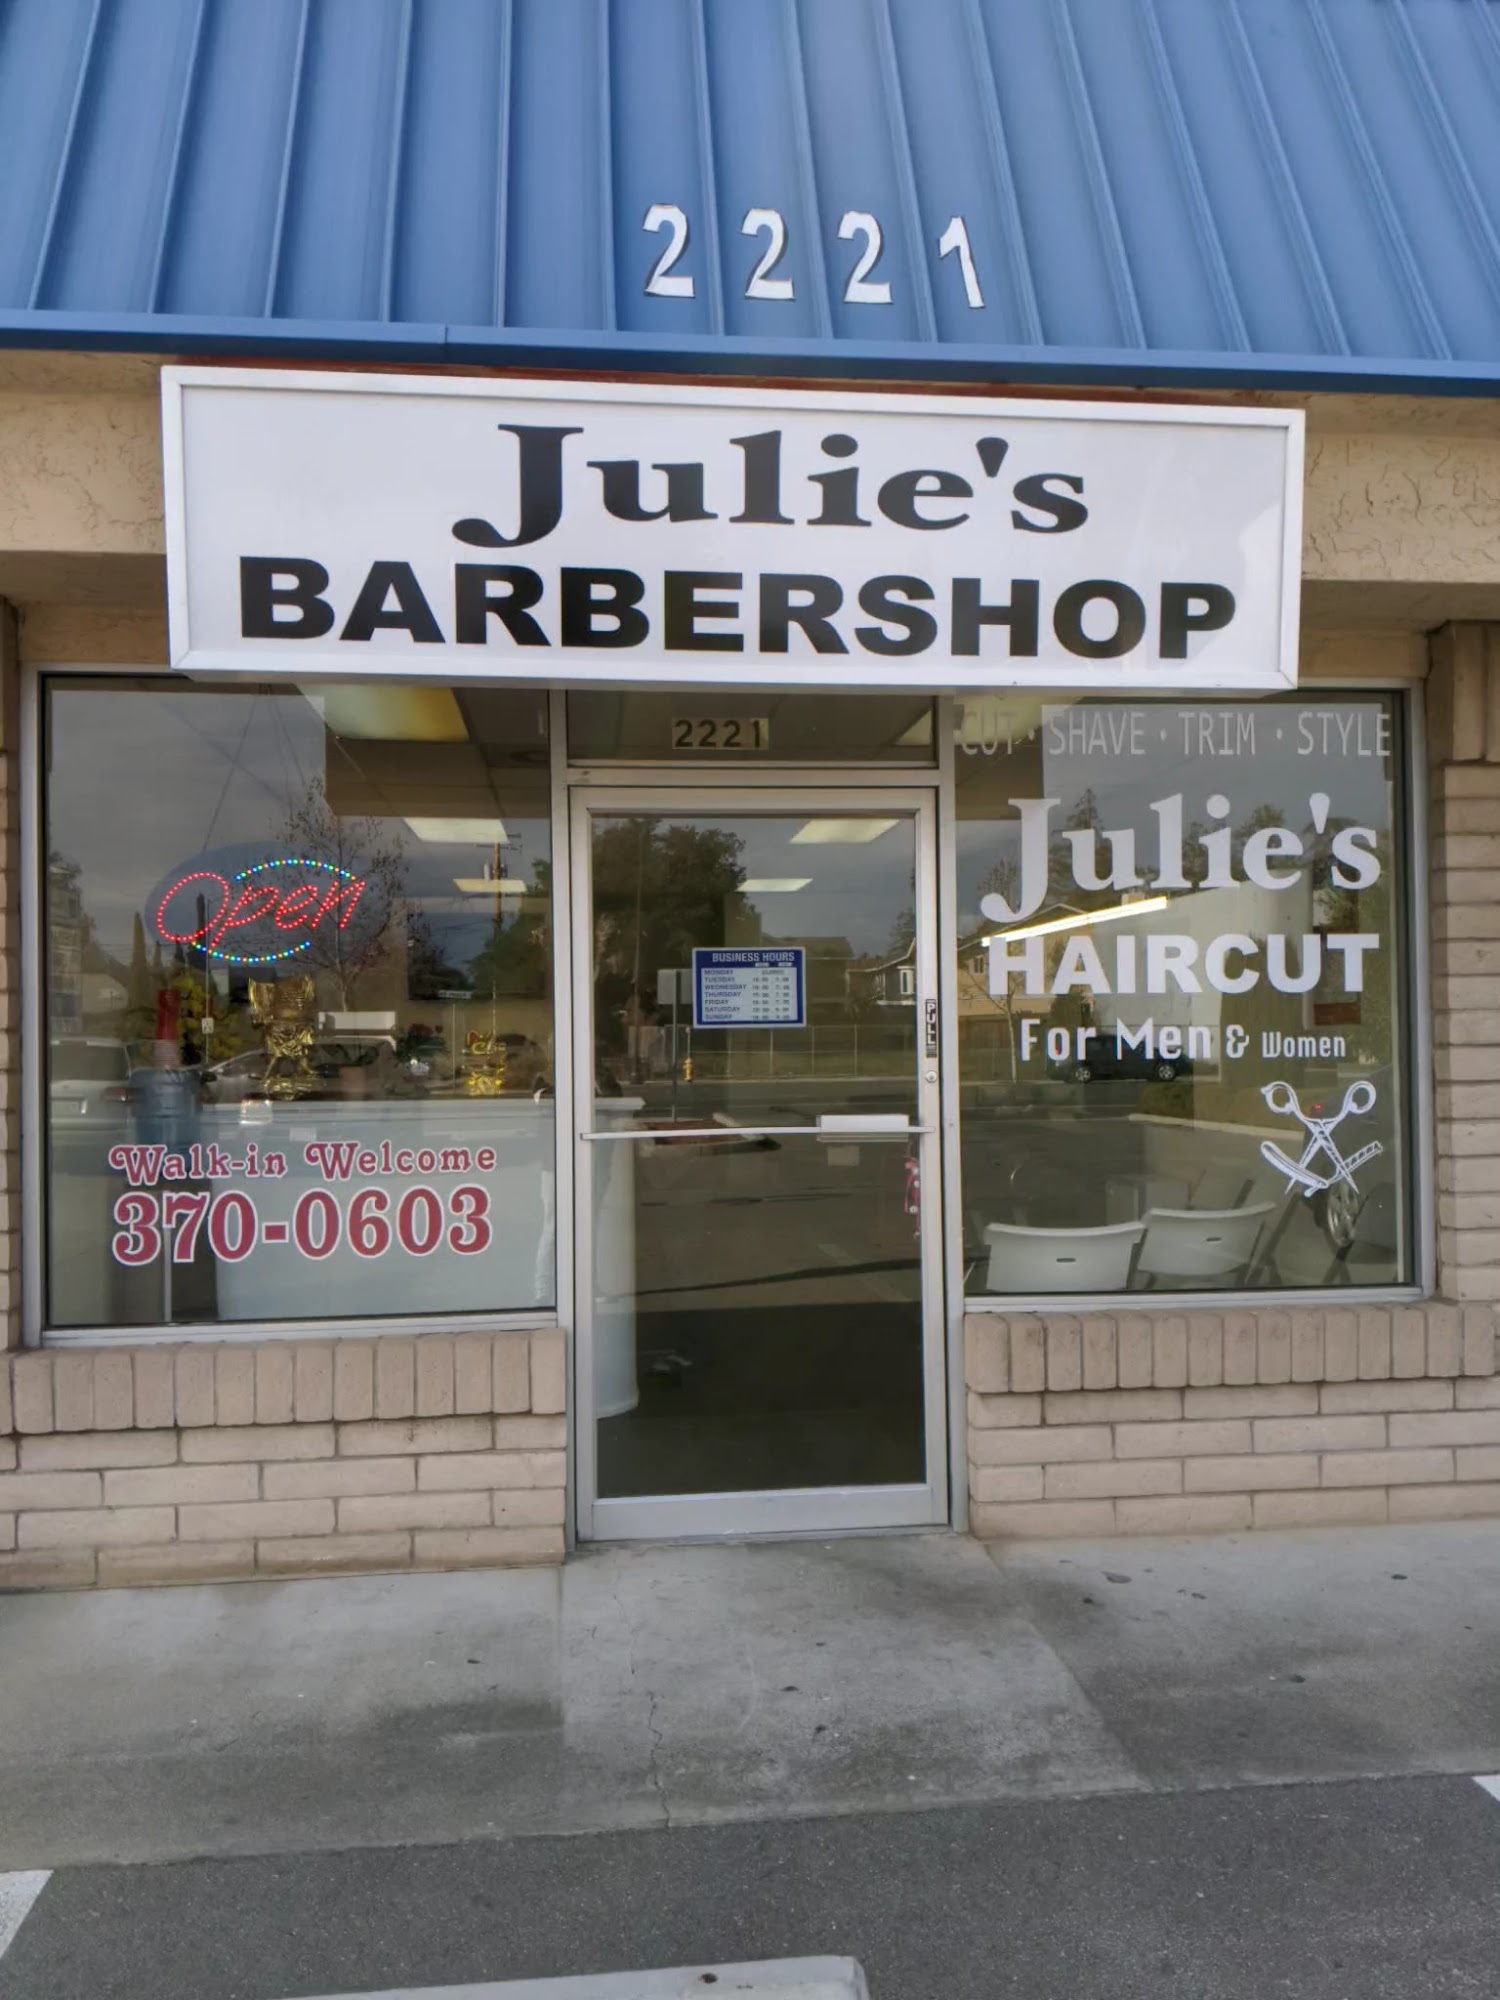 Julie's Barbershop